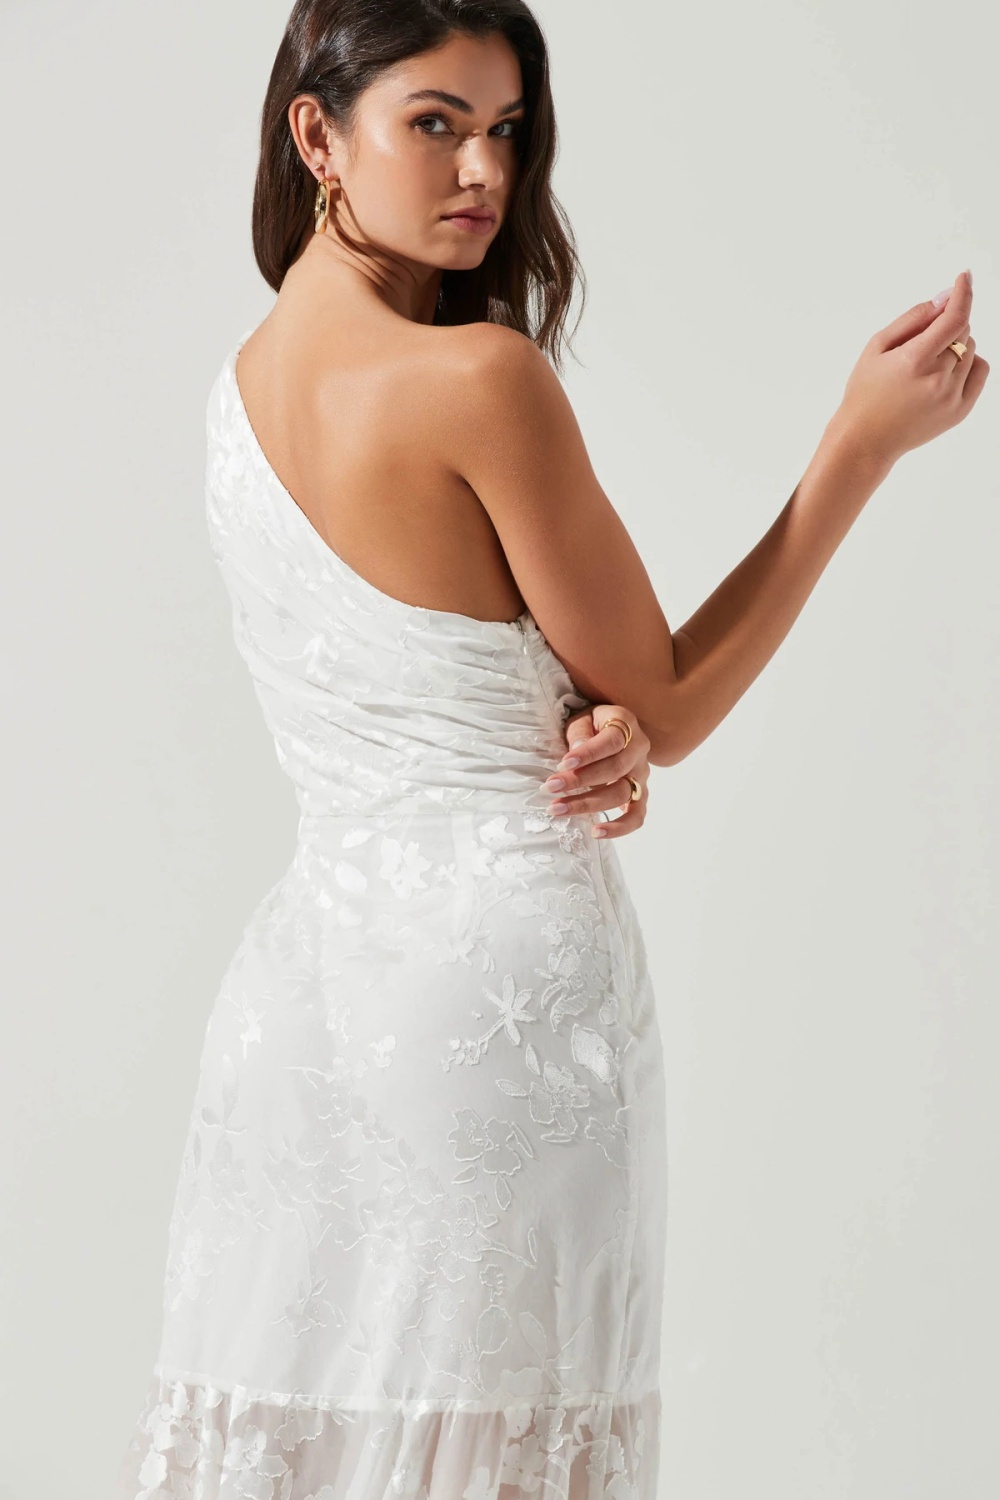 Strapless bridesmaid dress banquet dress for women